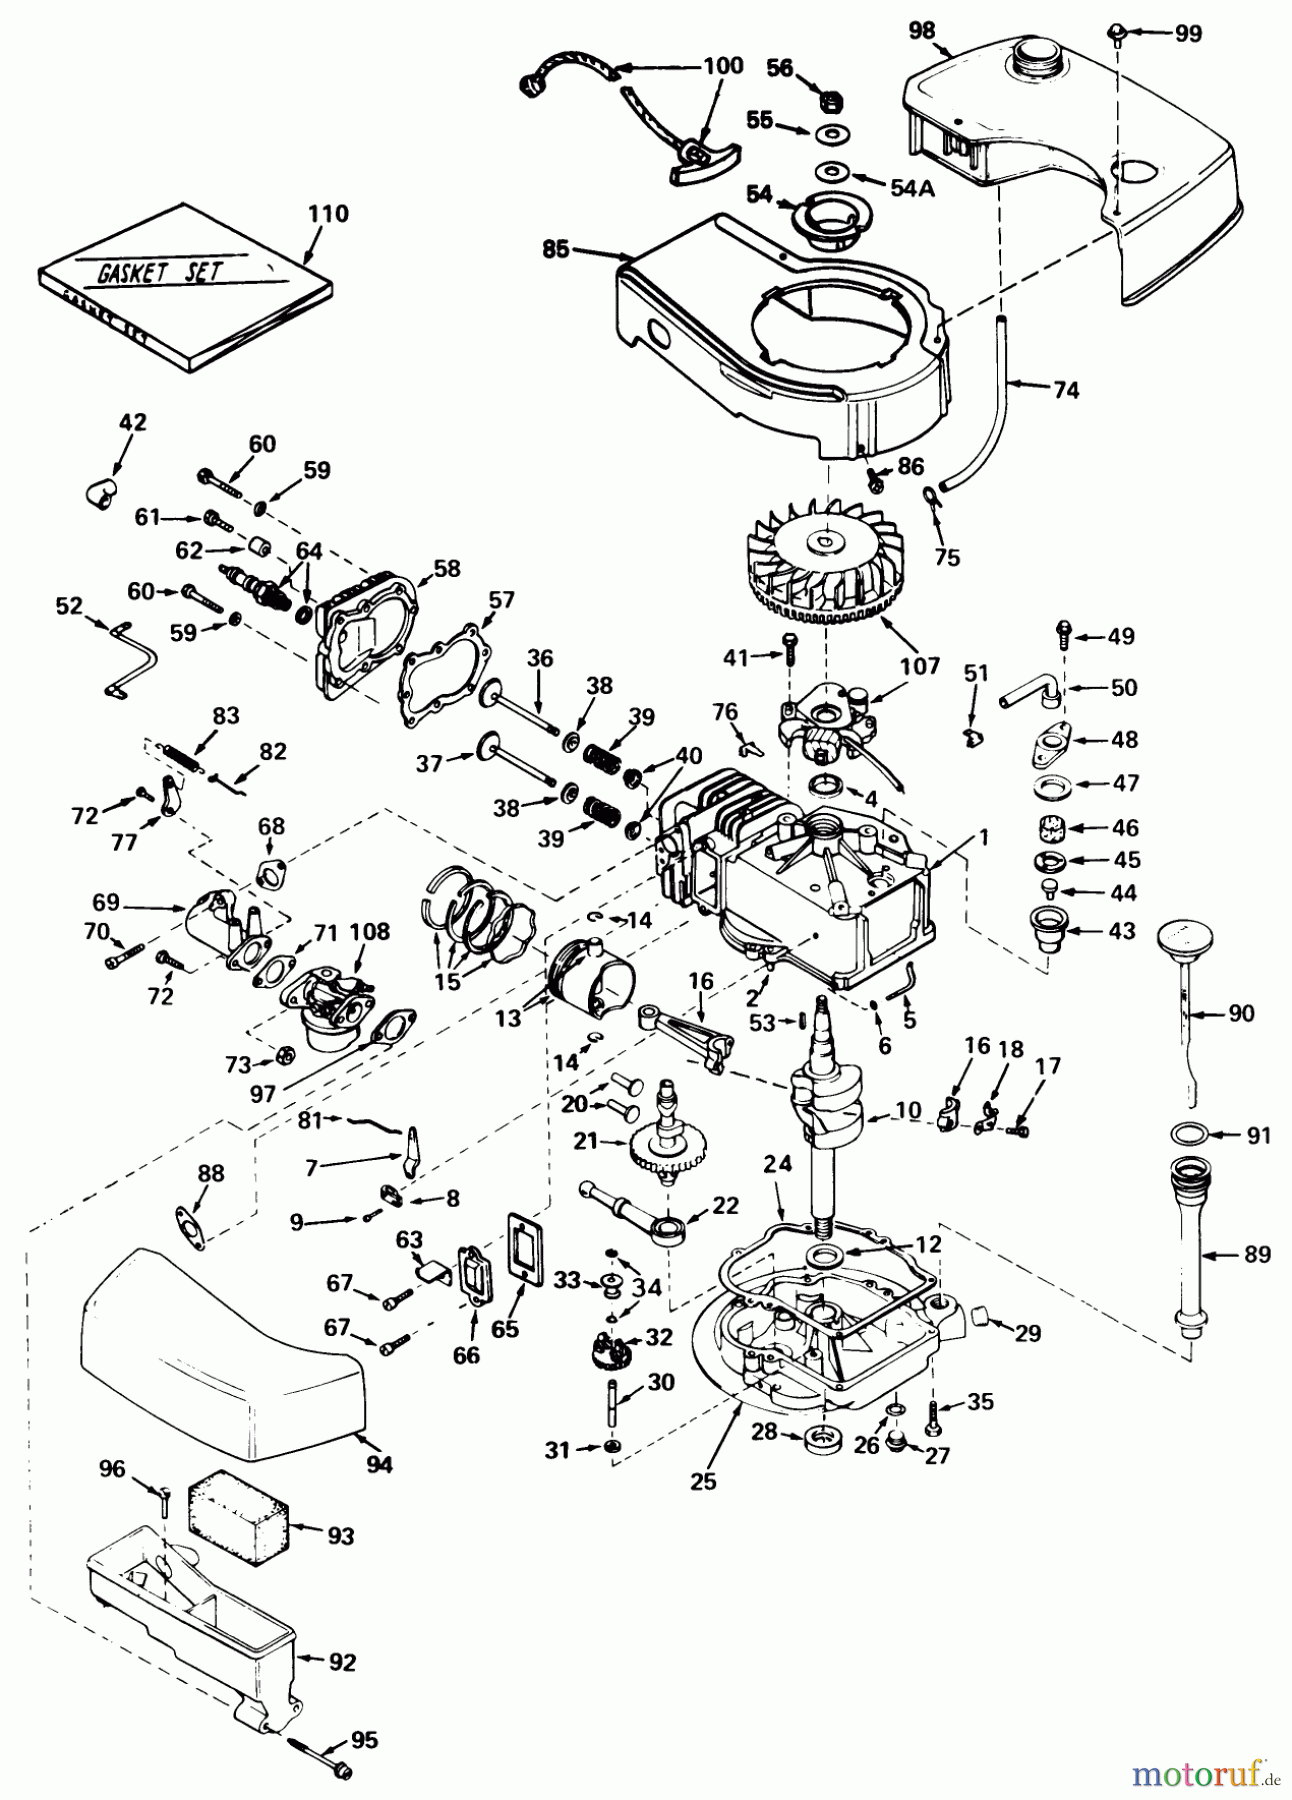  Toro Neu Mowers, Walk-Behind Seite 1 20506 - Toro Lawnmower, 1976 (6000001-6999999) ENGINE TECUMSEH MODEL NO. TNT 120-12004